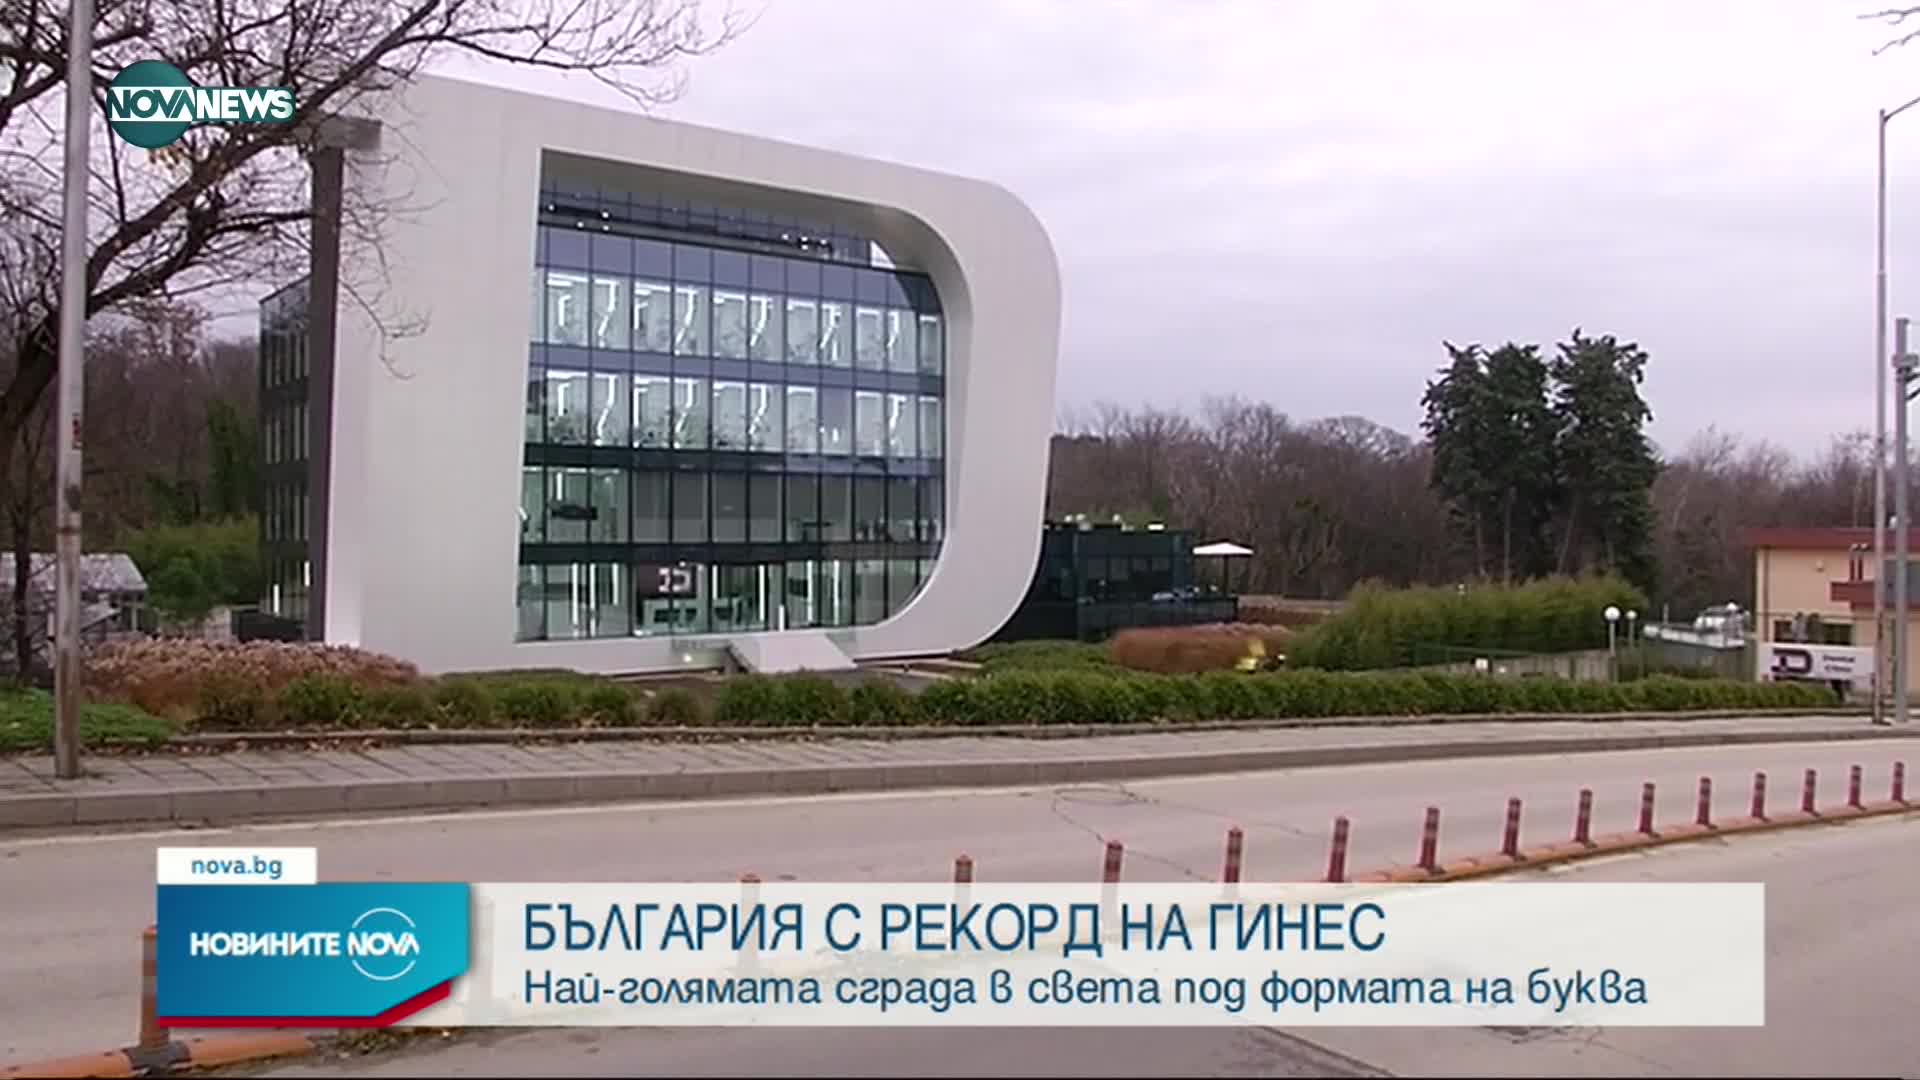 РЕКОРД НА ГИНЕС: Най-голямата сграда в света с формата на буква е във Варна